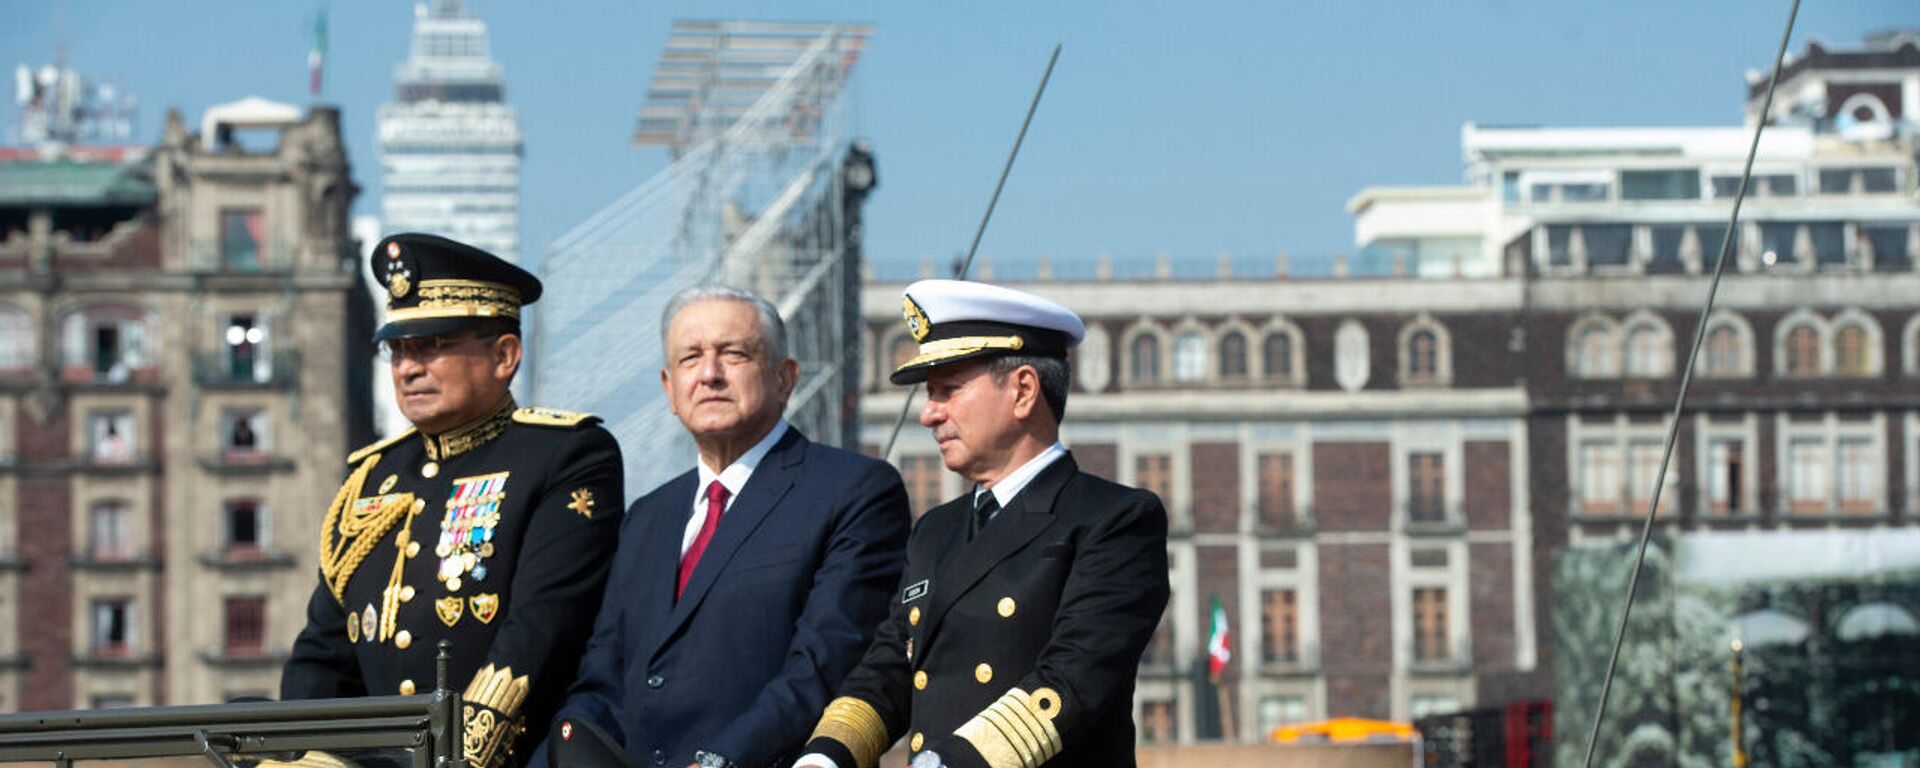 Andrés Manuel López Obrador, presidente de México, acompañado del secretario de Marina y Defensa Nacional de México - Sputnik Mundo, 1920, 23.11.2021